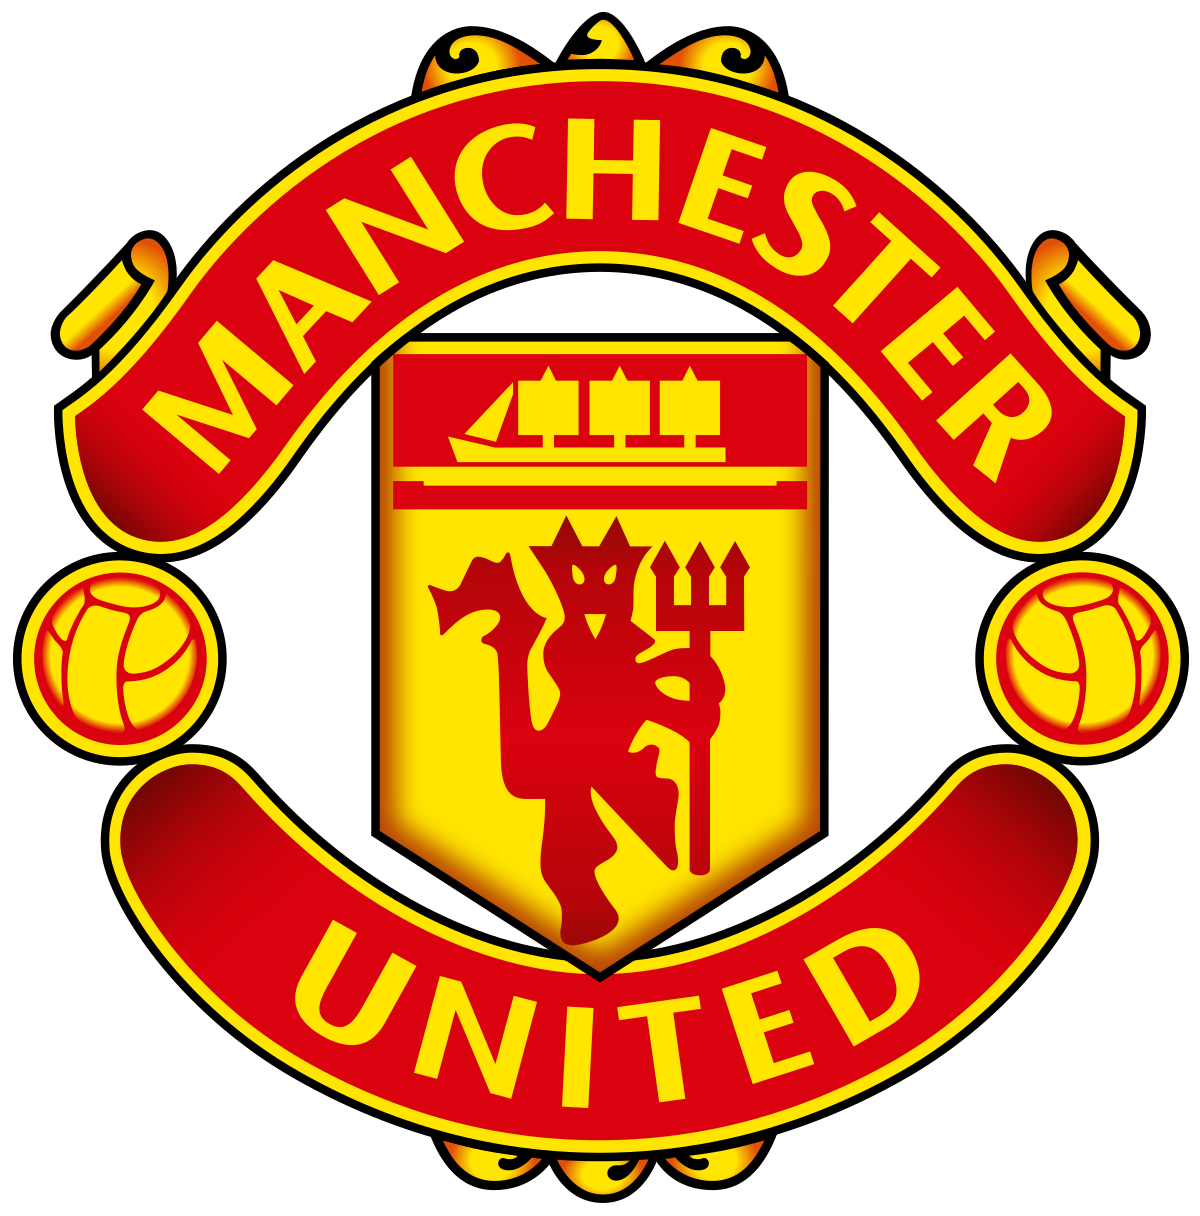 Logo Manchester United 2020 - KibrisPDR